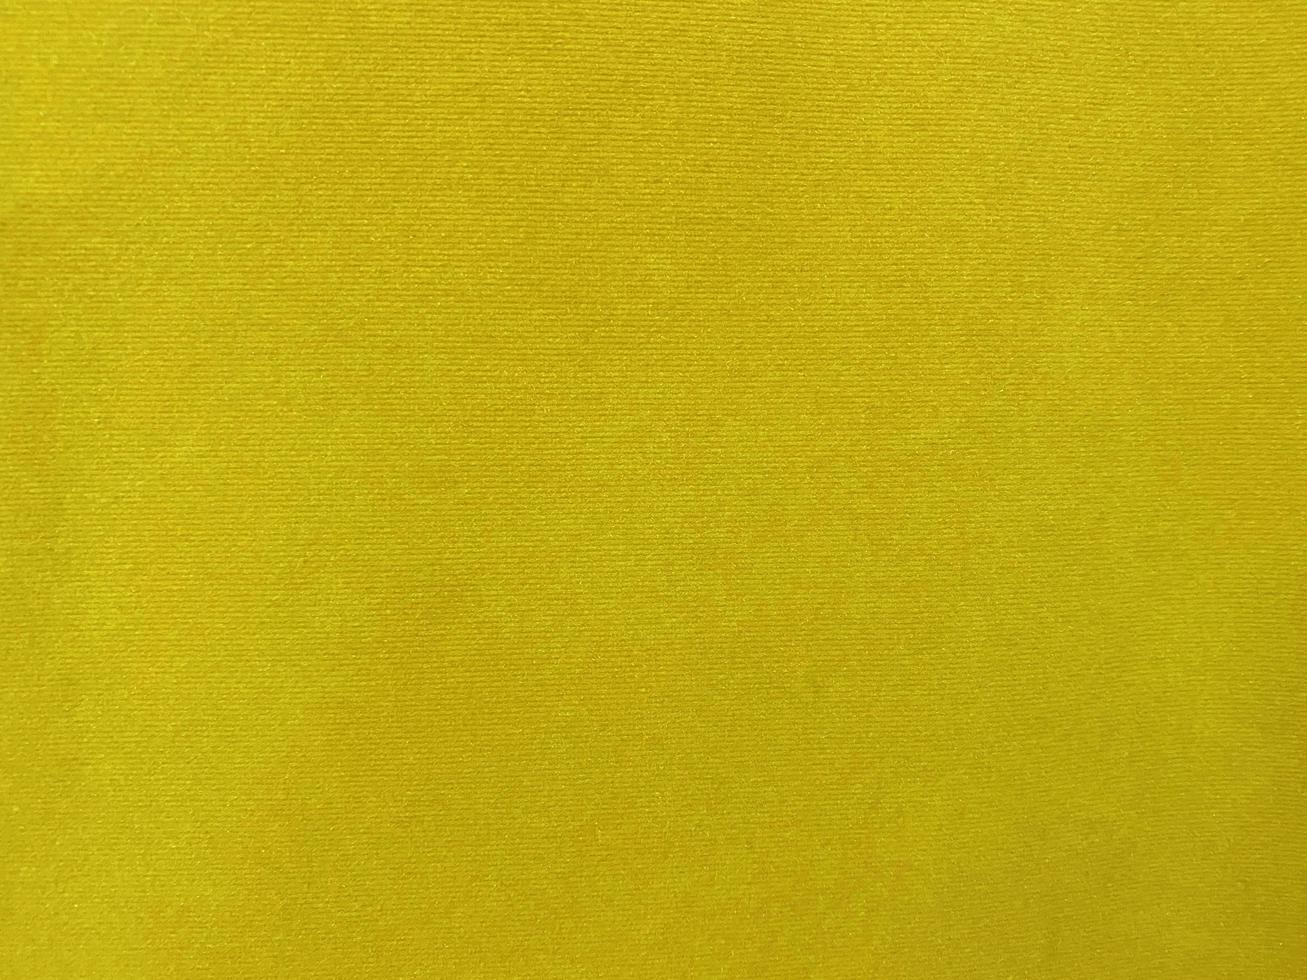 textura de tela de terciopelo amarillo utilizada como fondo. fondo de tela amarilla vacía de material textil suave y liso. hay espacio para el texto... foto